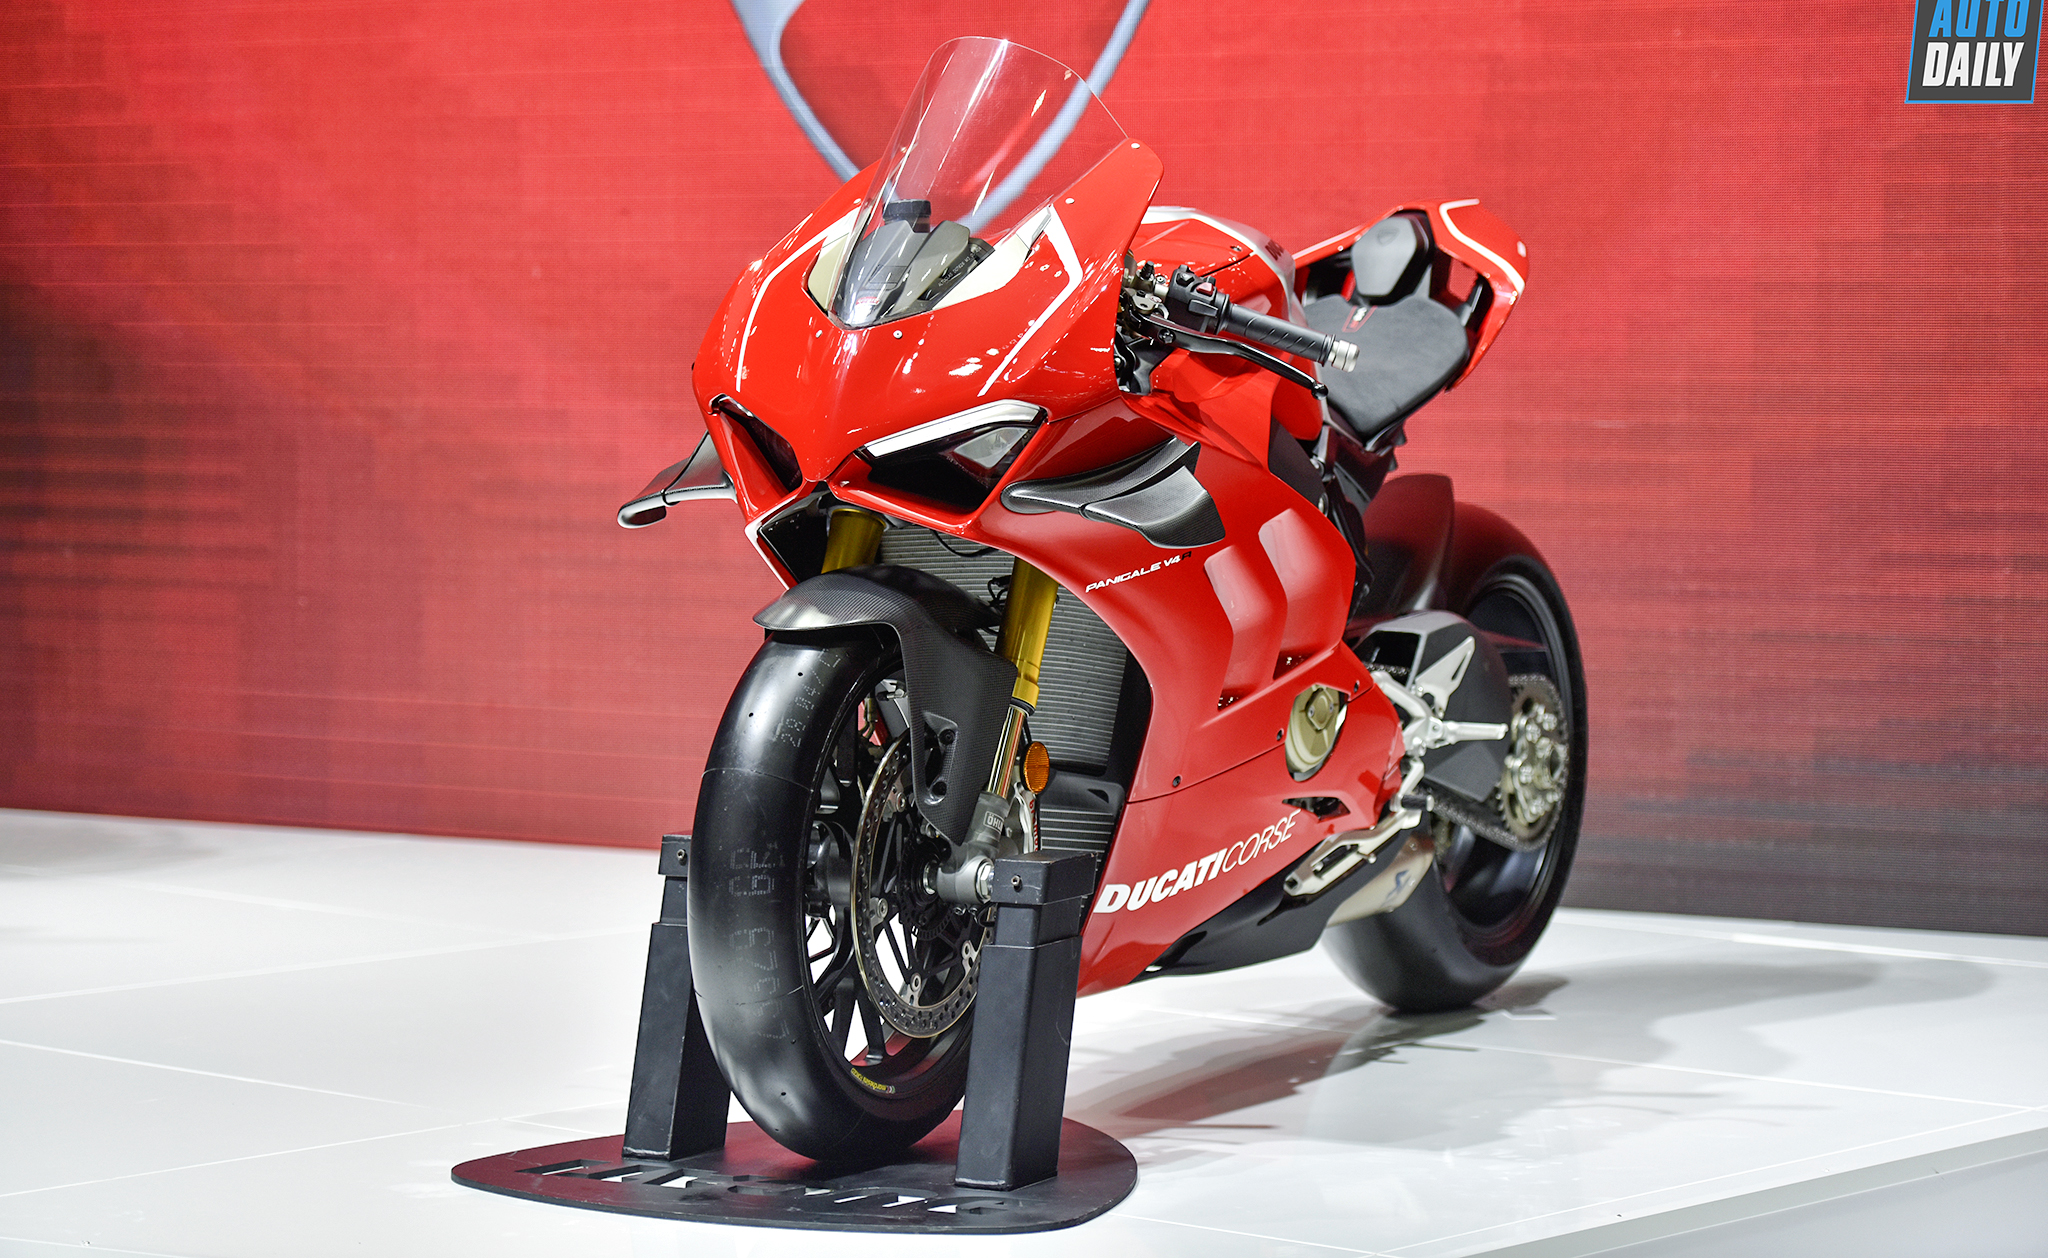 Chiêm ngưỡng Ducati Panigale V4 R 2019 nếu về VN giá khoảng 1,8 tỷ